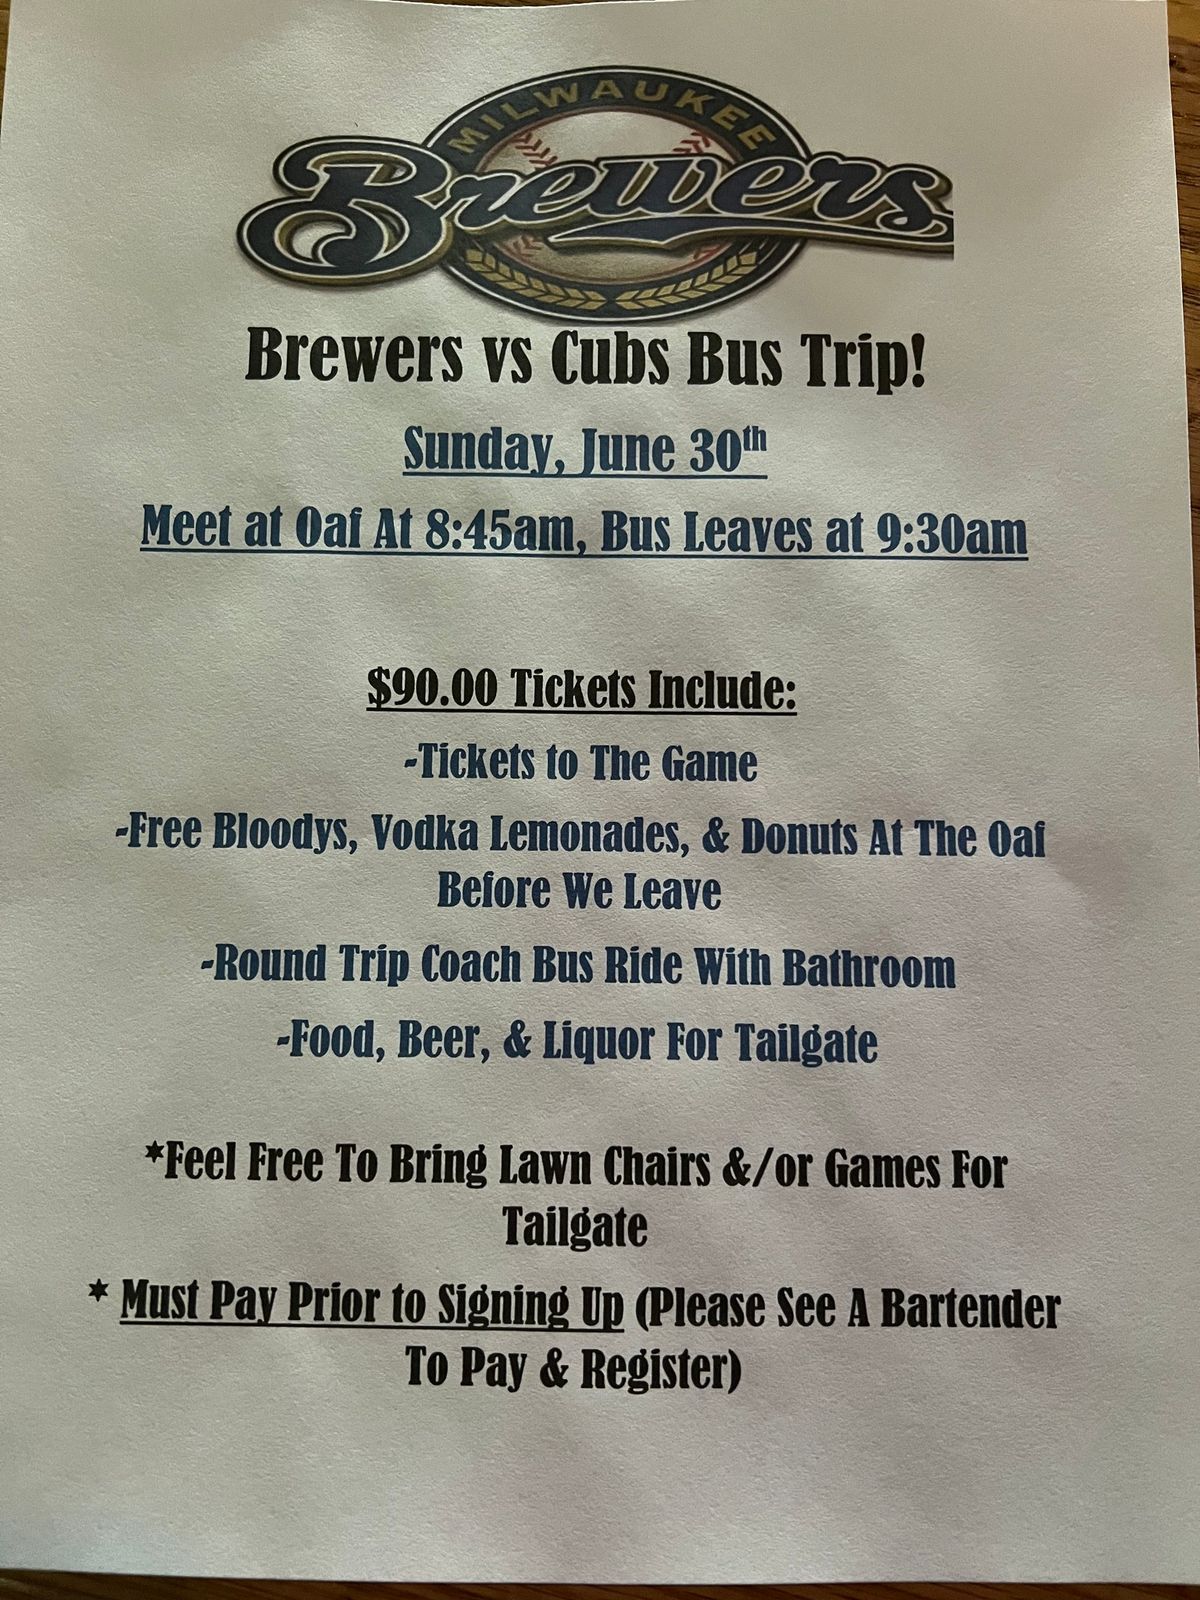 Oaf brewer bus trip